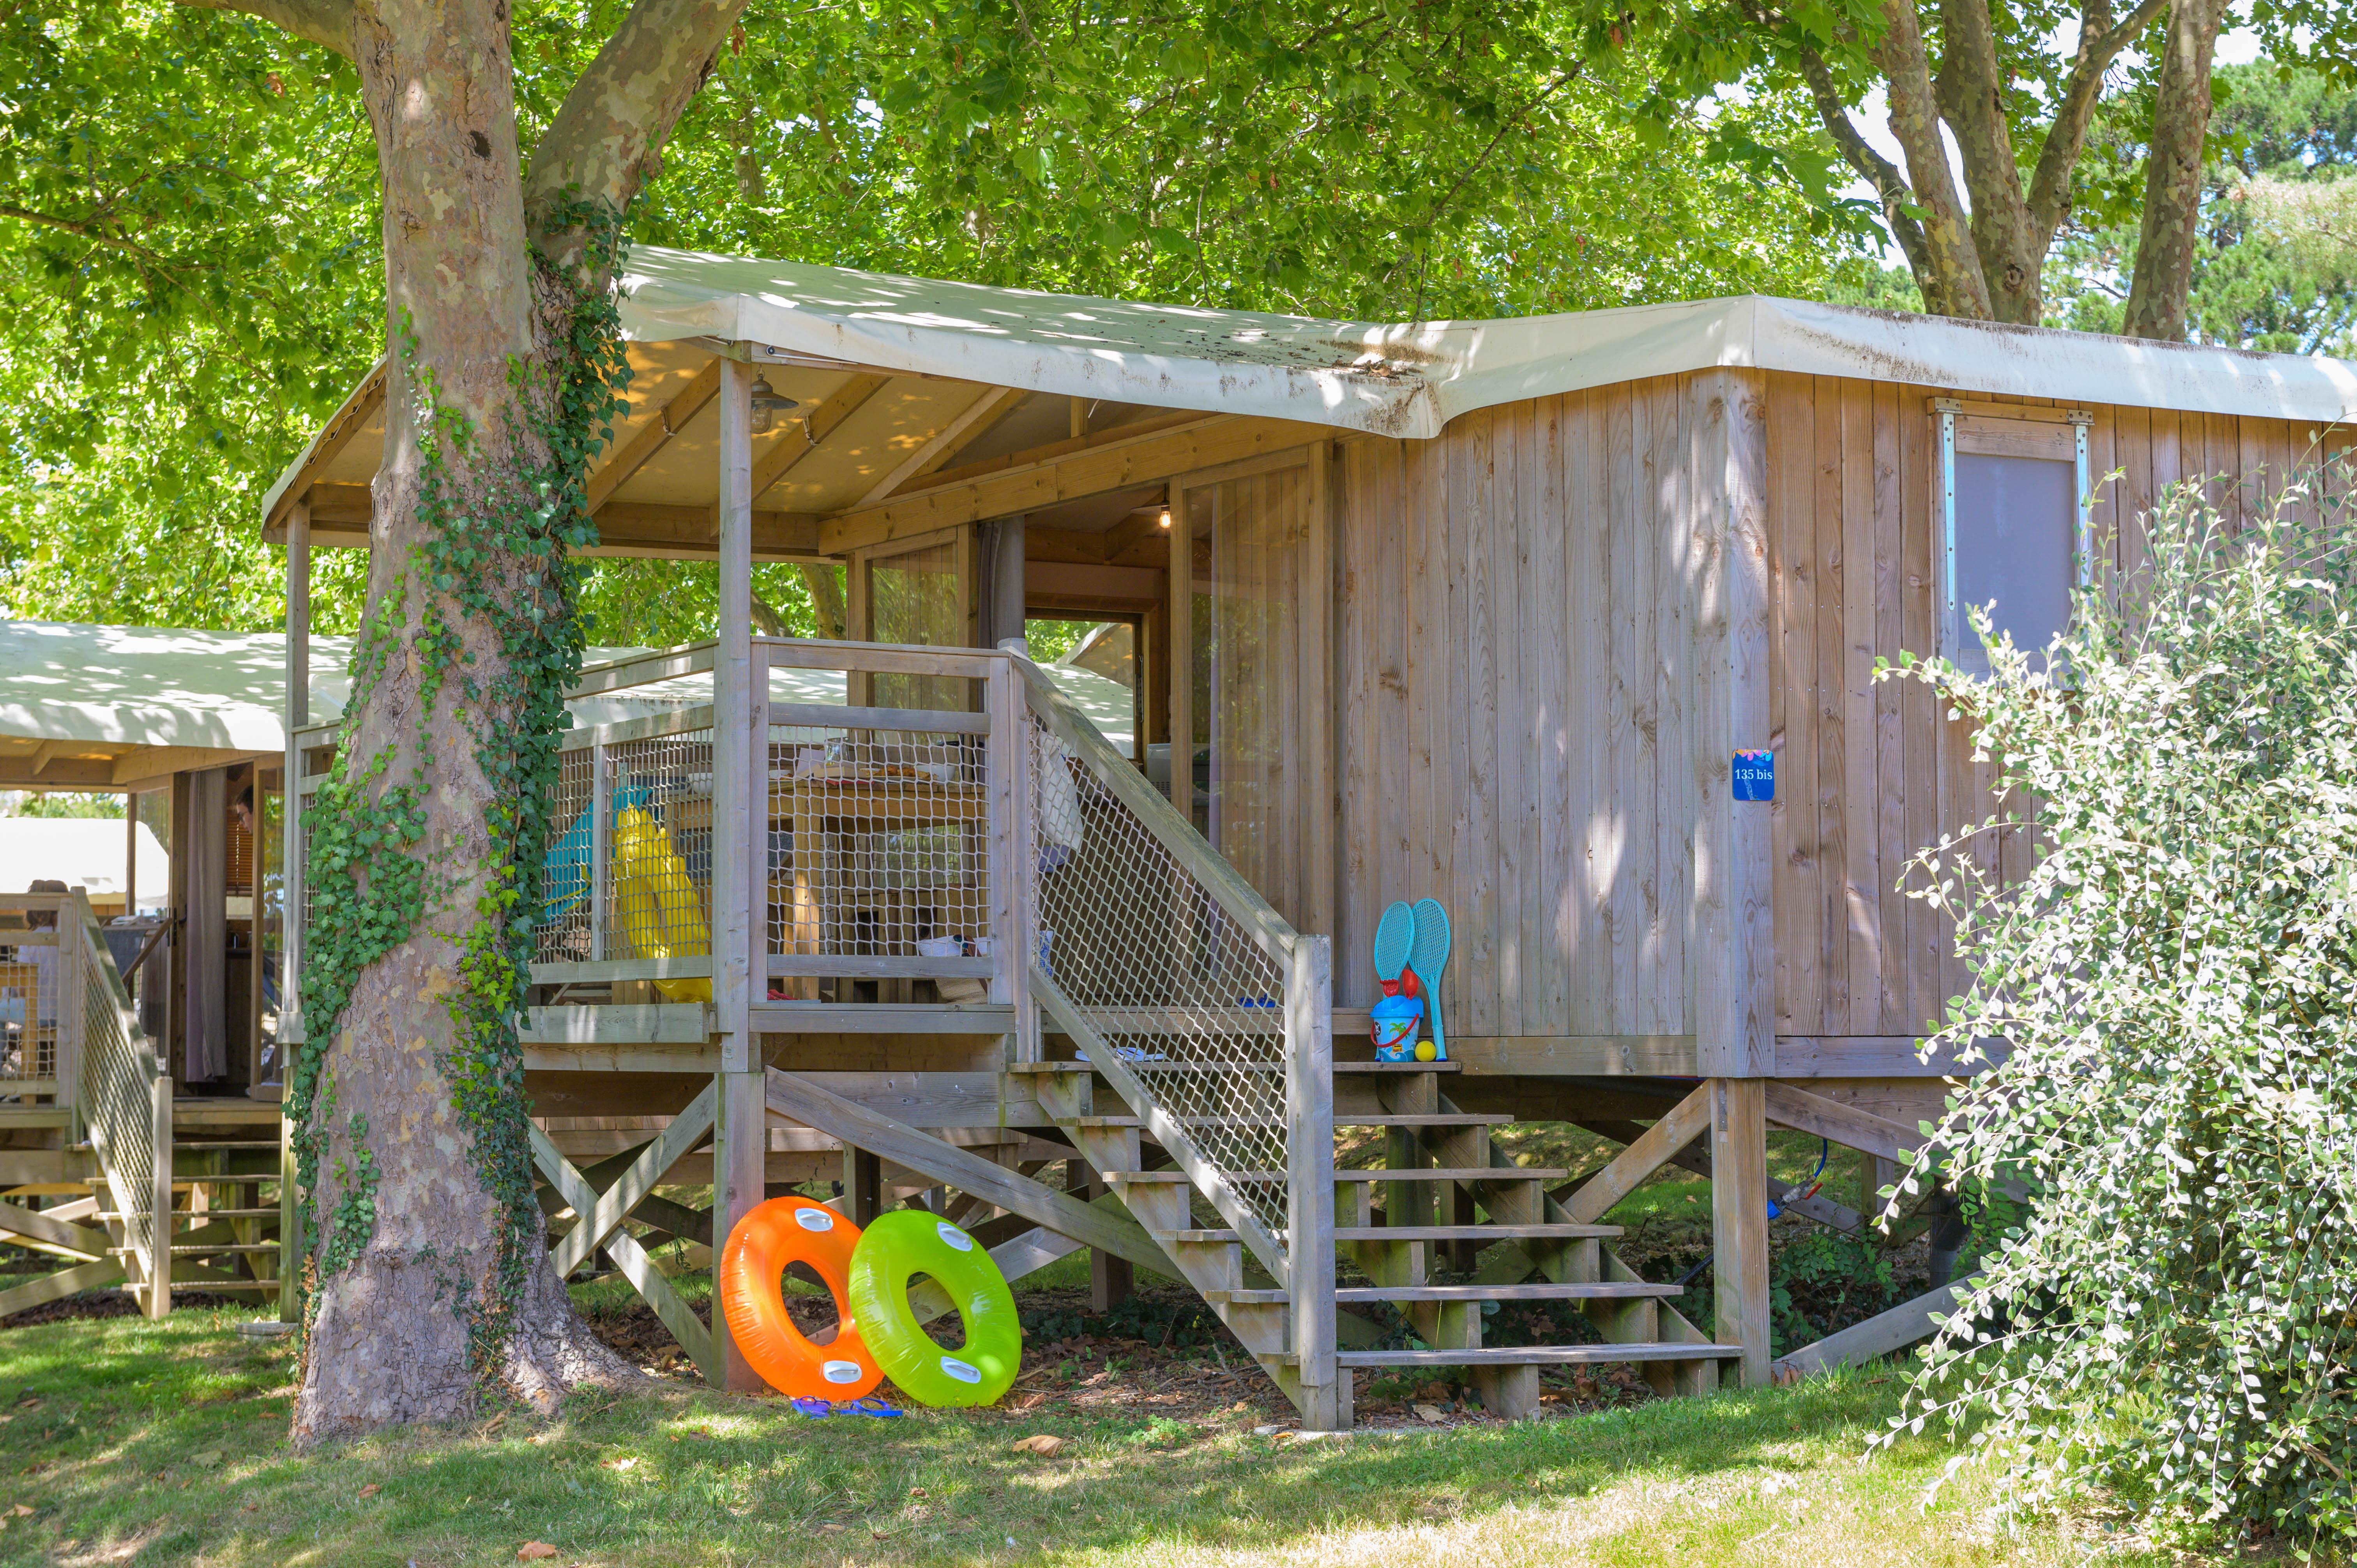 Location - Cabane Lodge Cosyflower Premium 38M² (2 Chambres) Dont Terrasse Couverte 10M² + Tv + Draps Inclus - Flower Camping Le Conleau